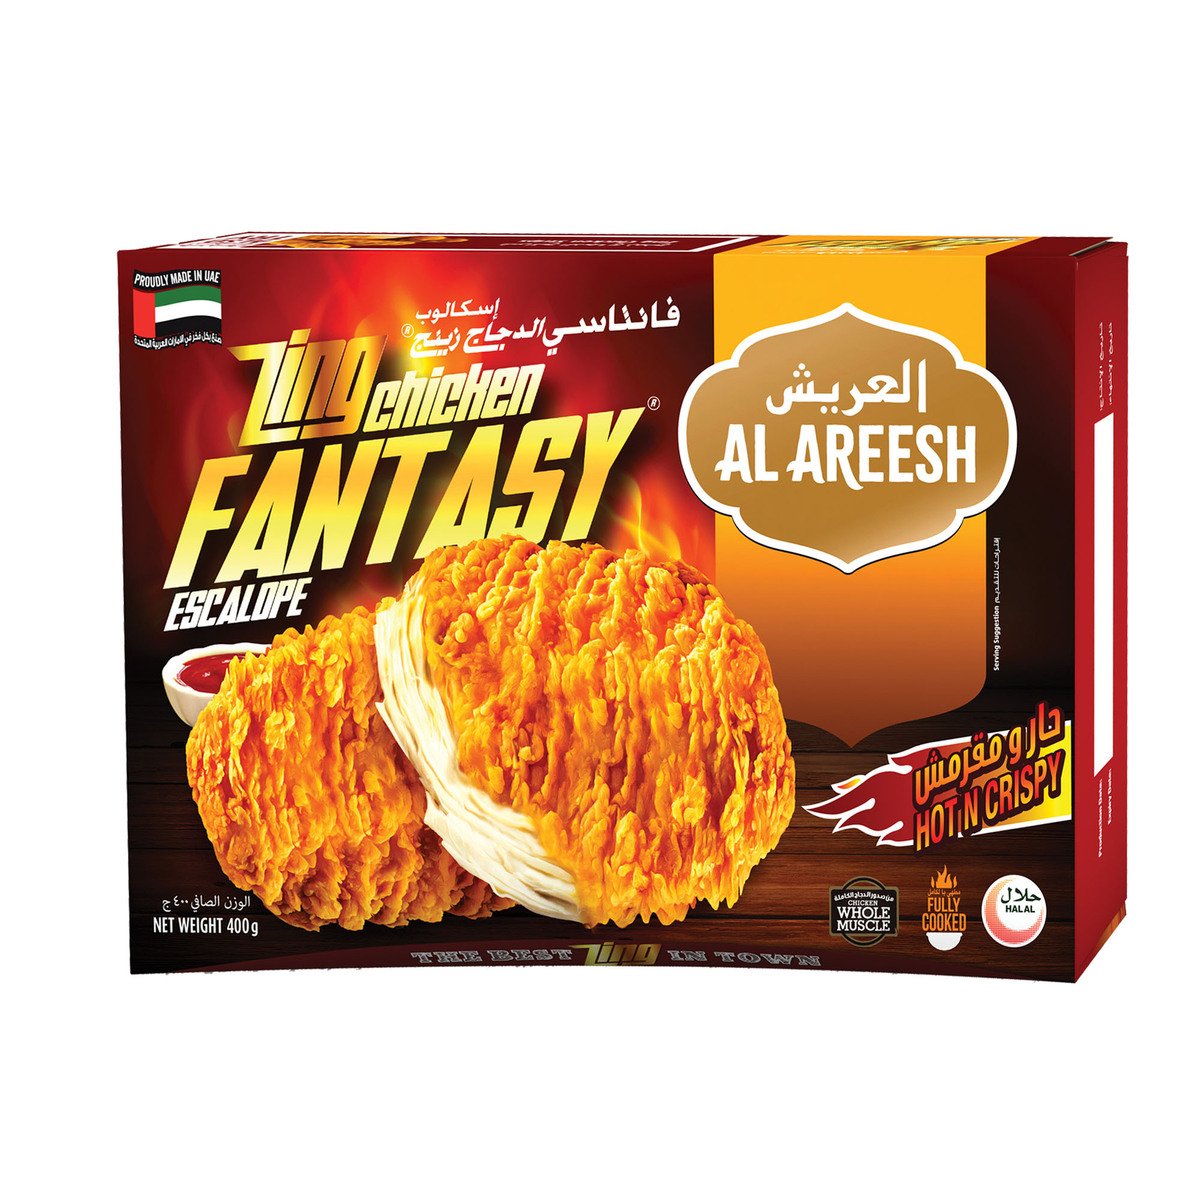 Al Areesh Zing Chicken Fantasy Escalope Hot N Crispy 400 g